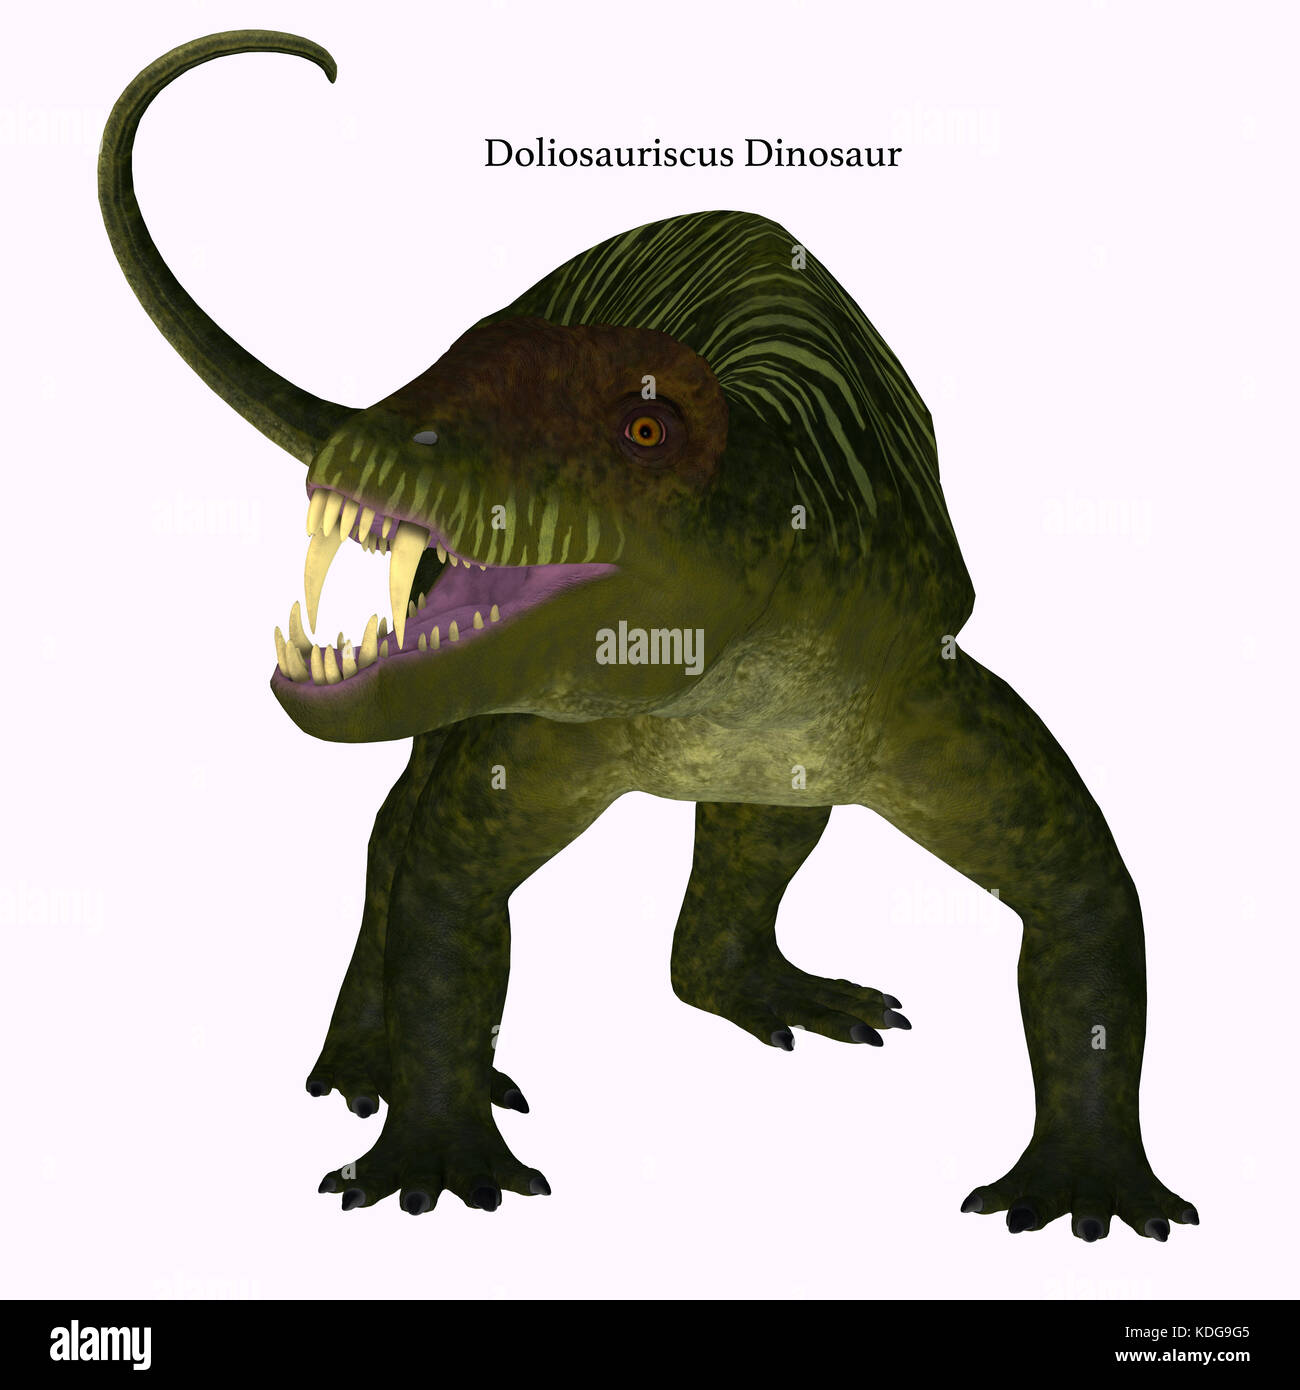 Doliosauriscus Dinosaurier auf Weiß - Doliosauriscus ist eine ausgestorbene Gattung der therapsid fleischfressenden Dinosaurier, die in Russland in der Permian Periode lebte. Stockfoto